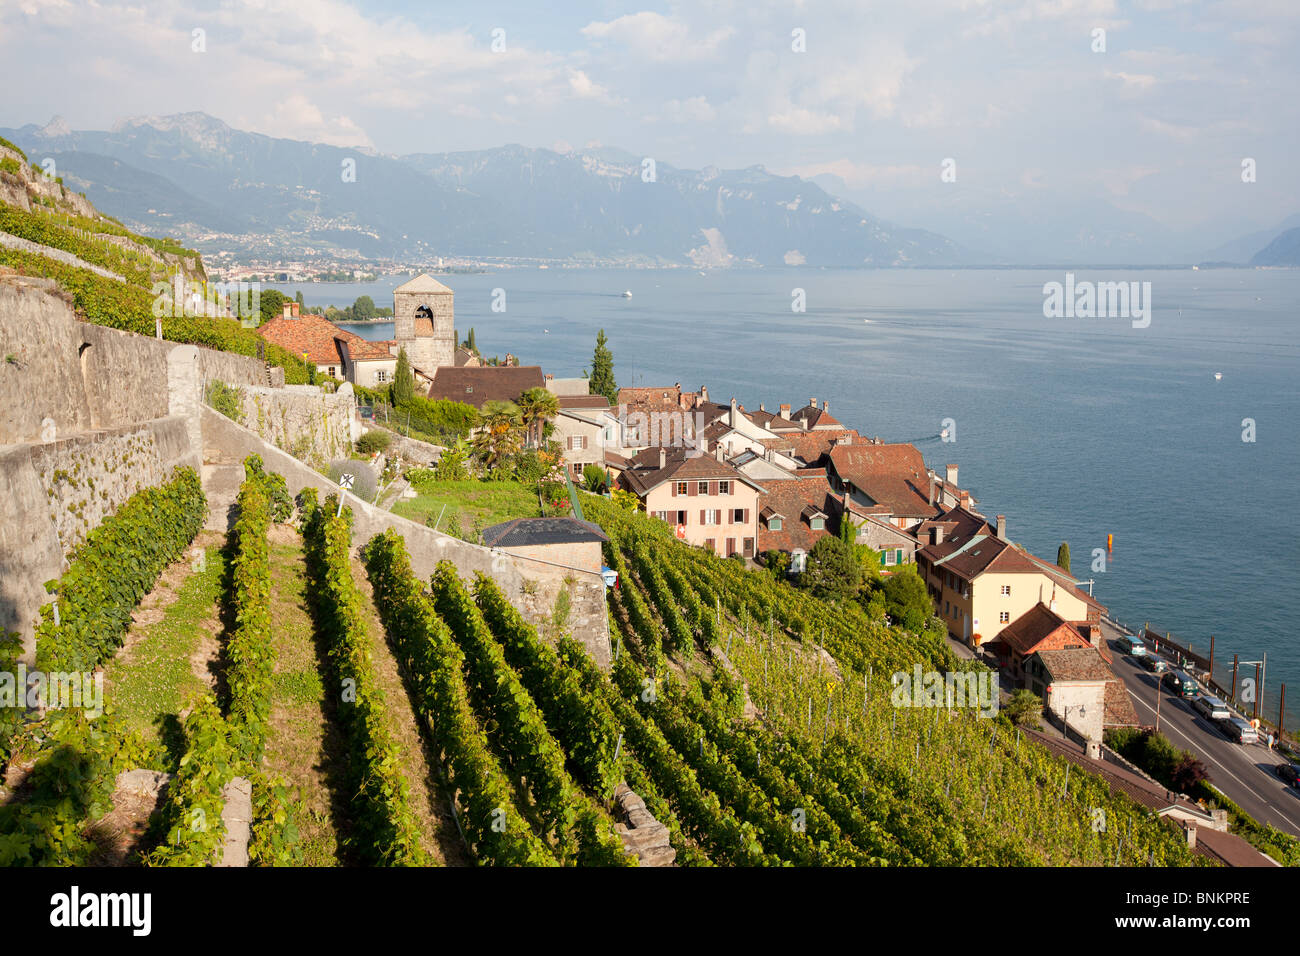 Vignobles en terrasses, Saint Saphorin, Lavaux, lac de Genève, Suisse. Banque D'Images